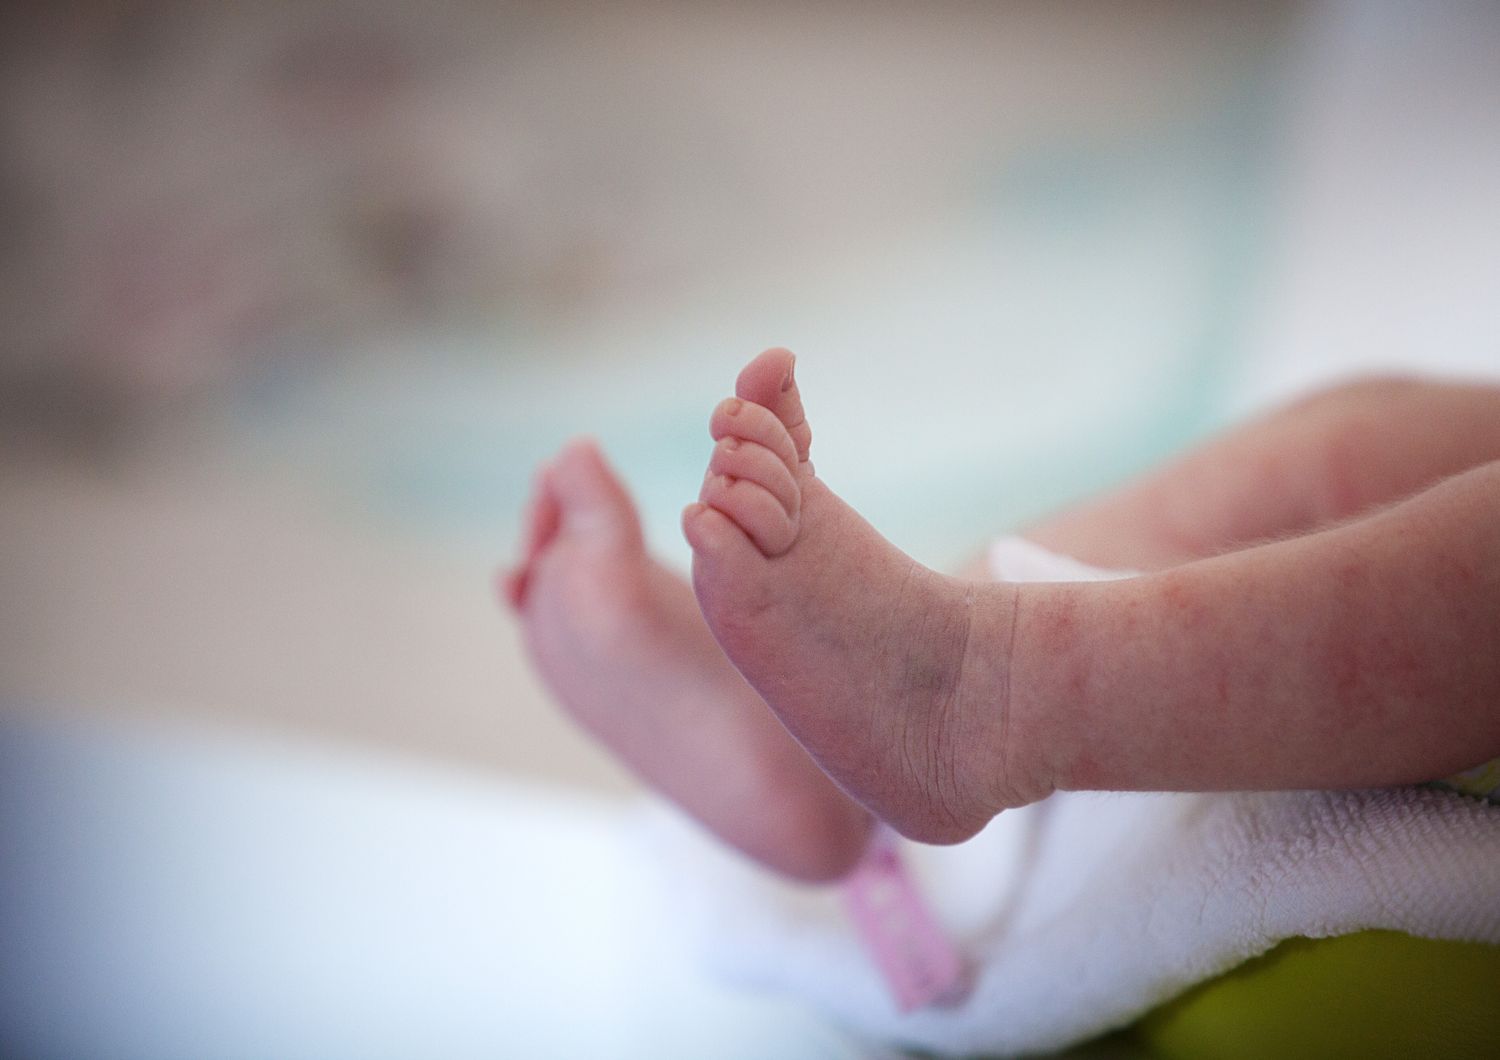 roma neonato morto per circoncisione 2 donne arrestate